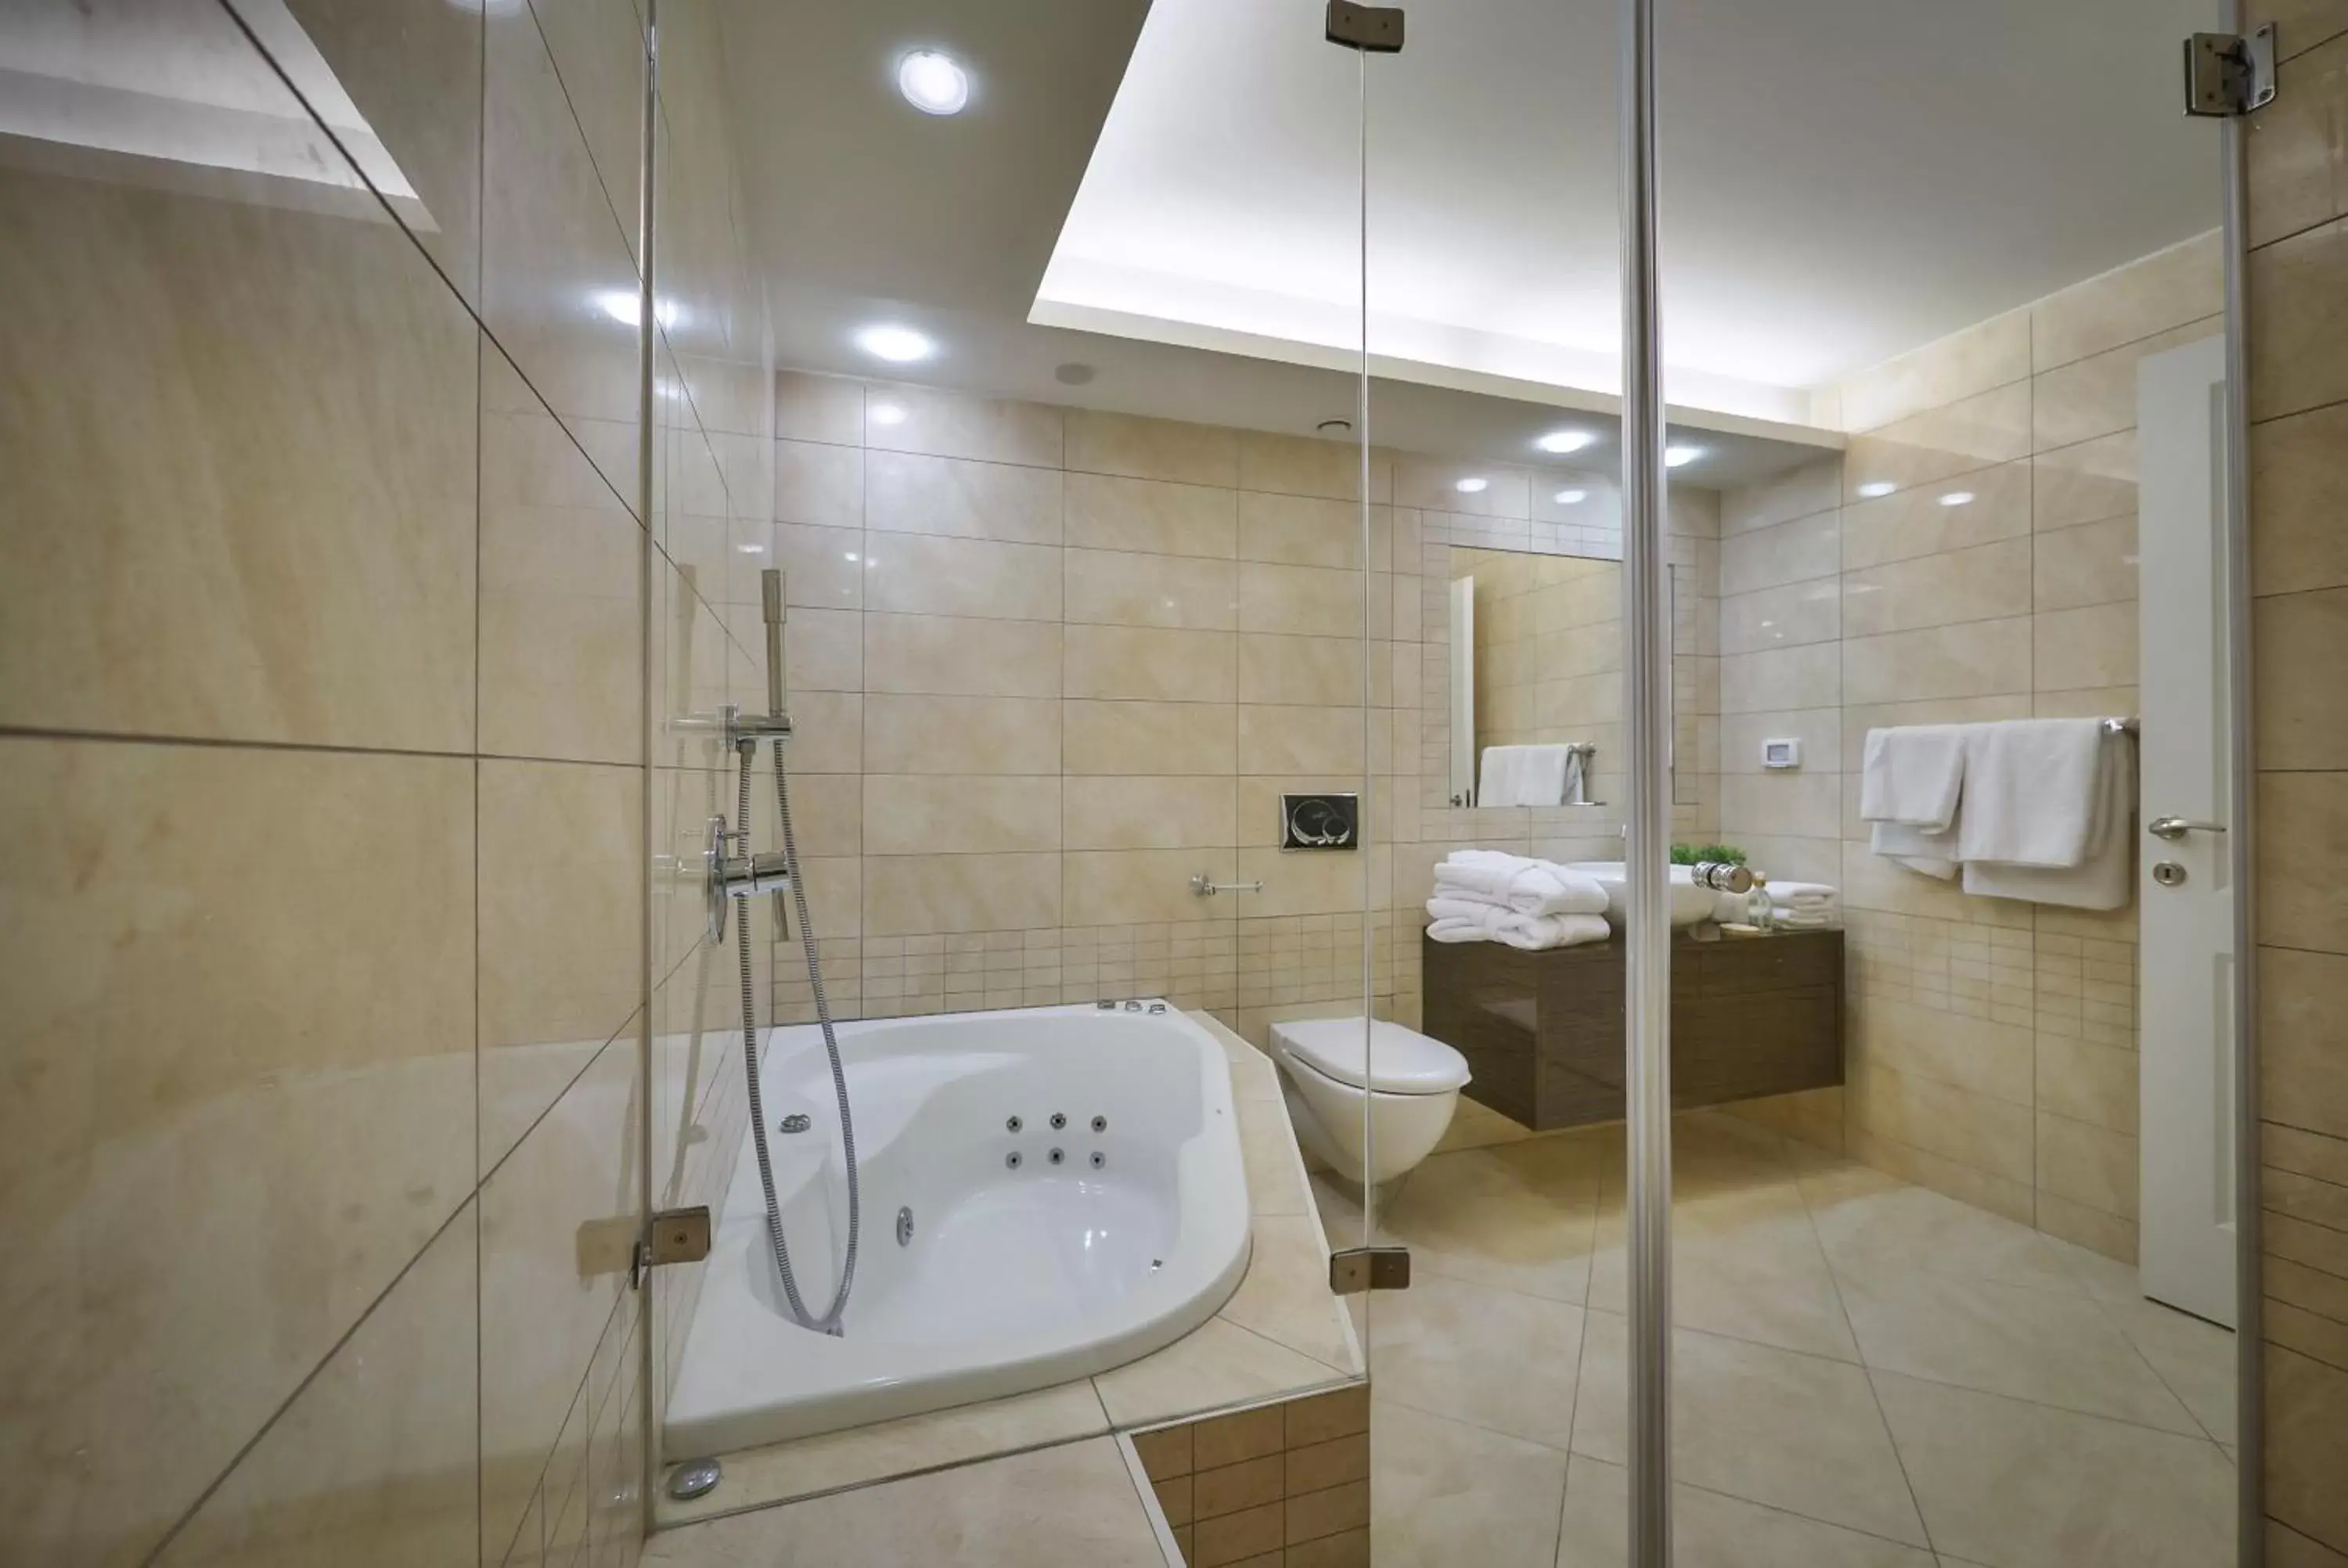 Hot Tub, Bathroom in 21st Floor Hotel